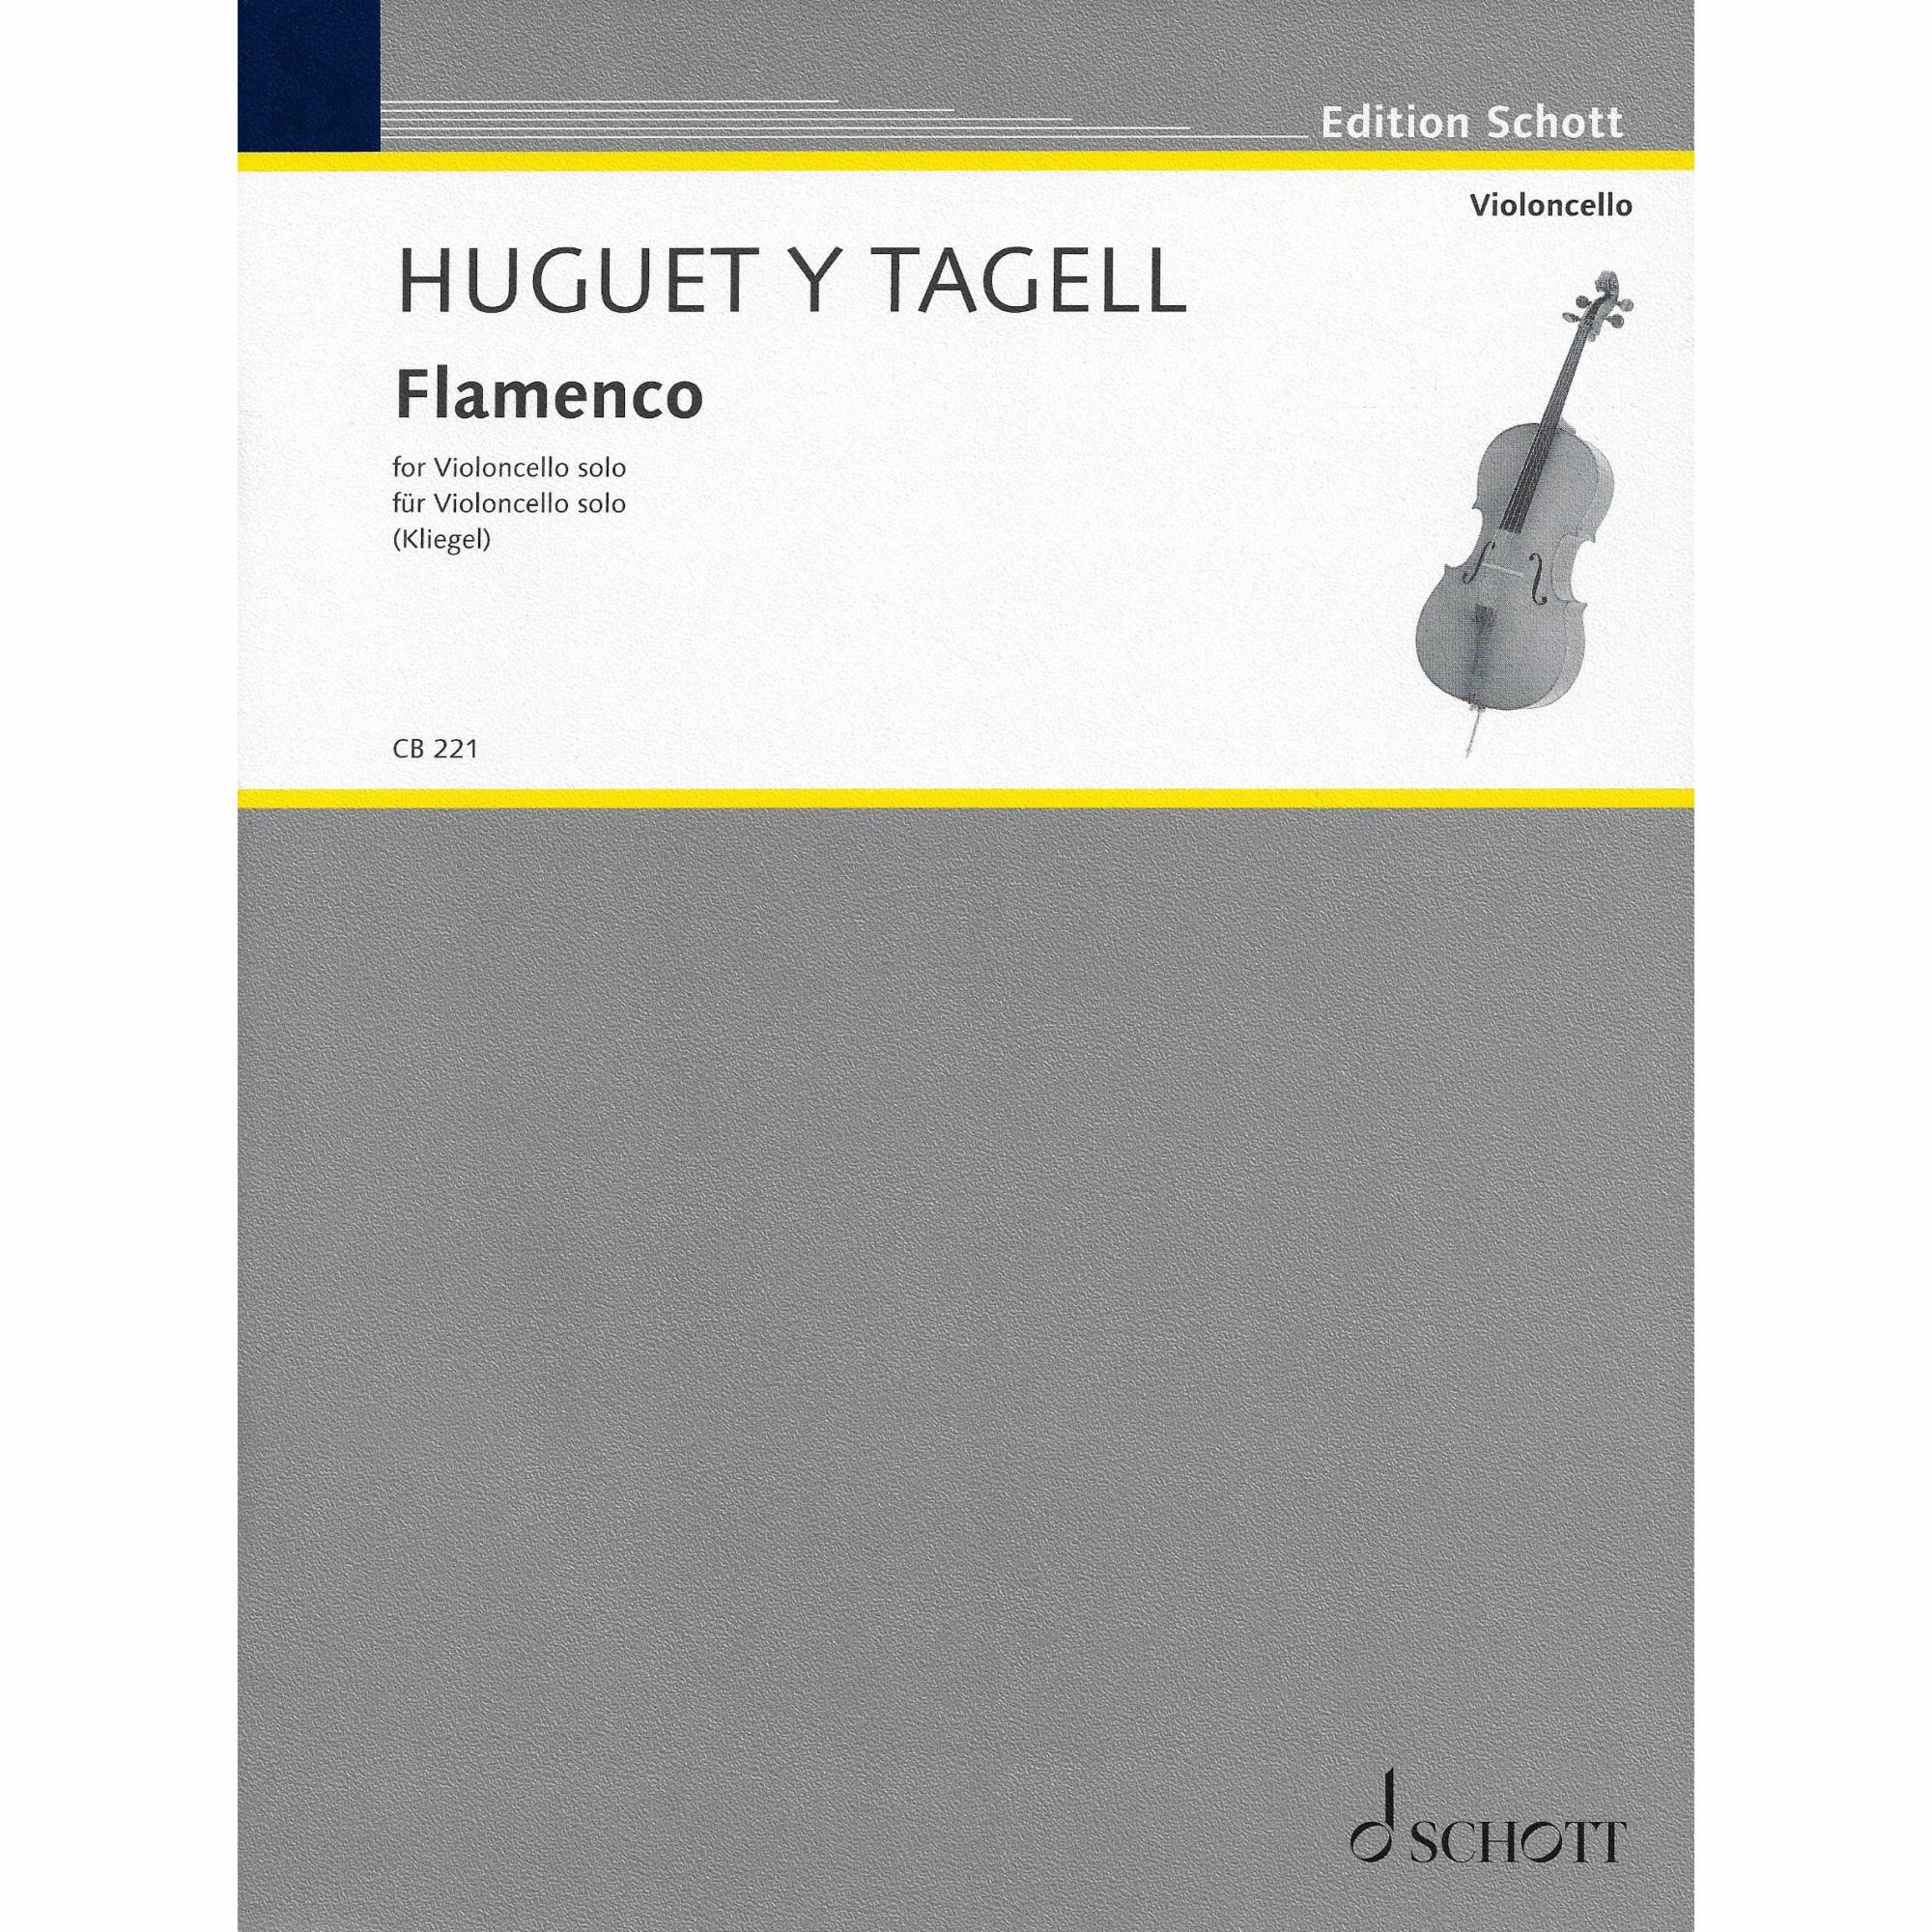 Huguet y Tagell -- Flamenco for Solo Cello